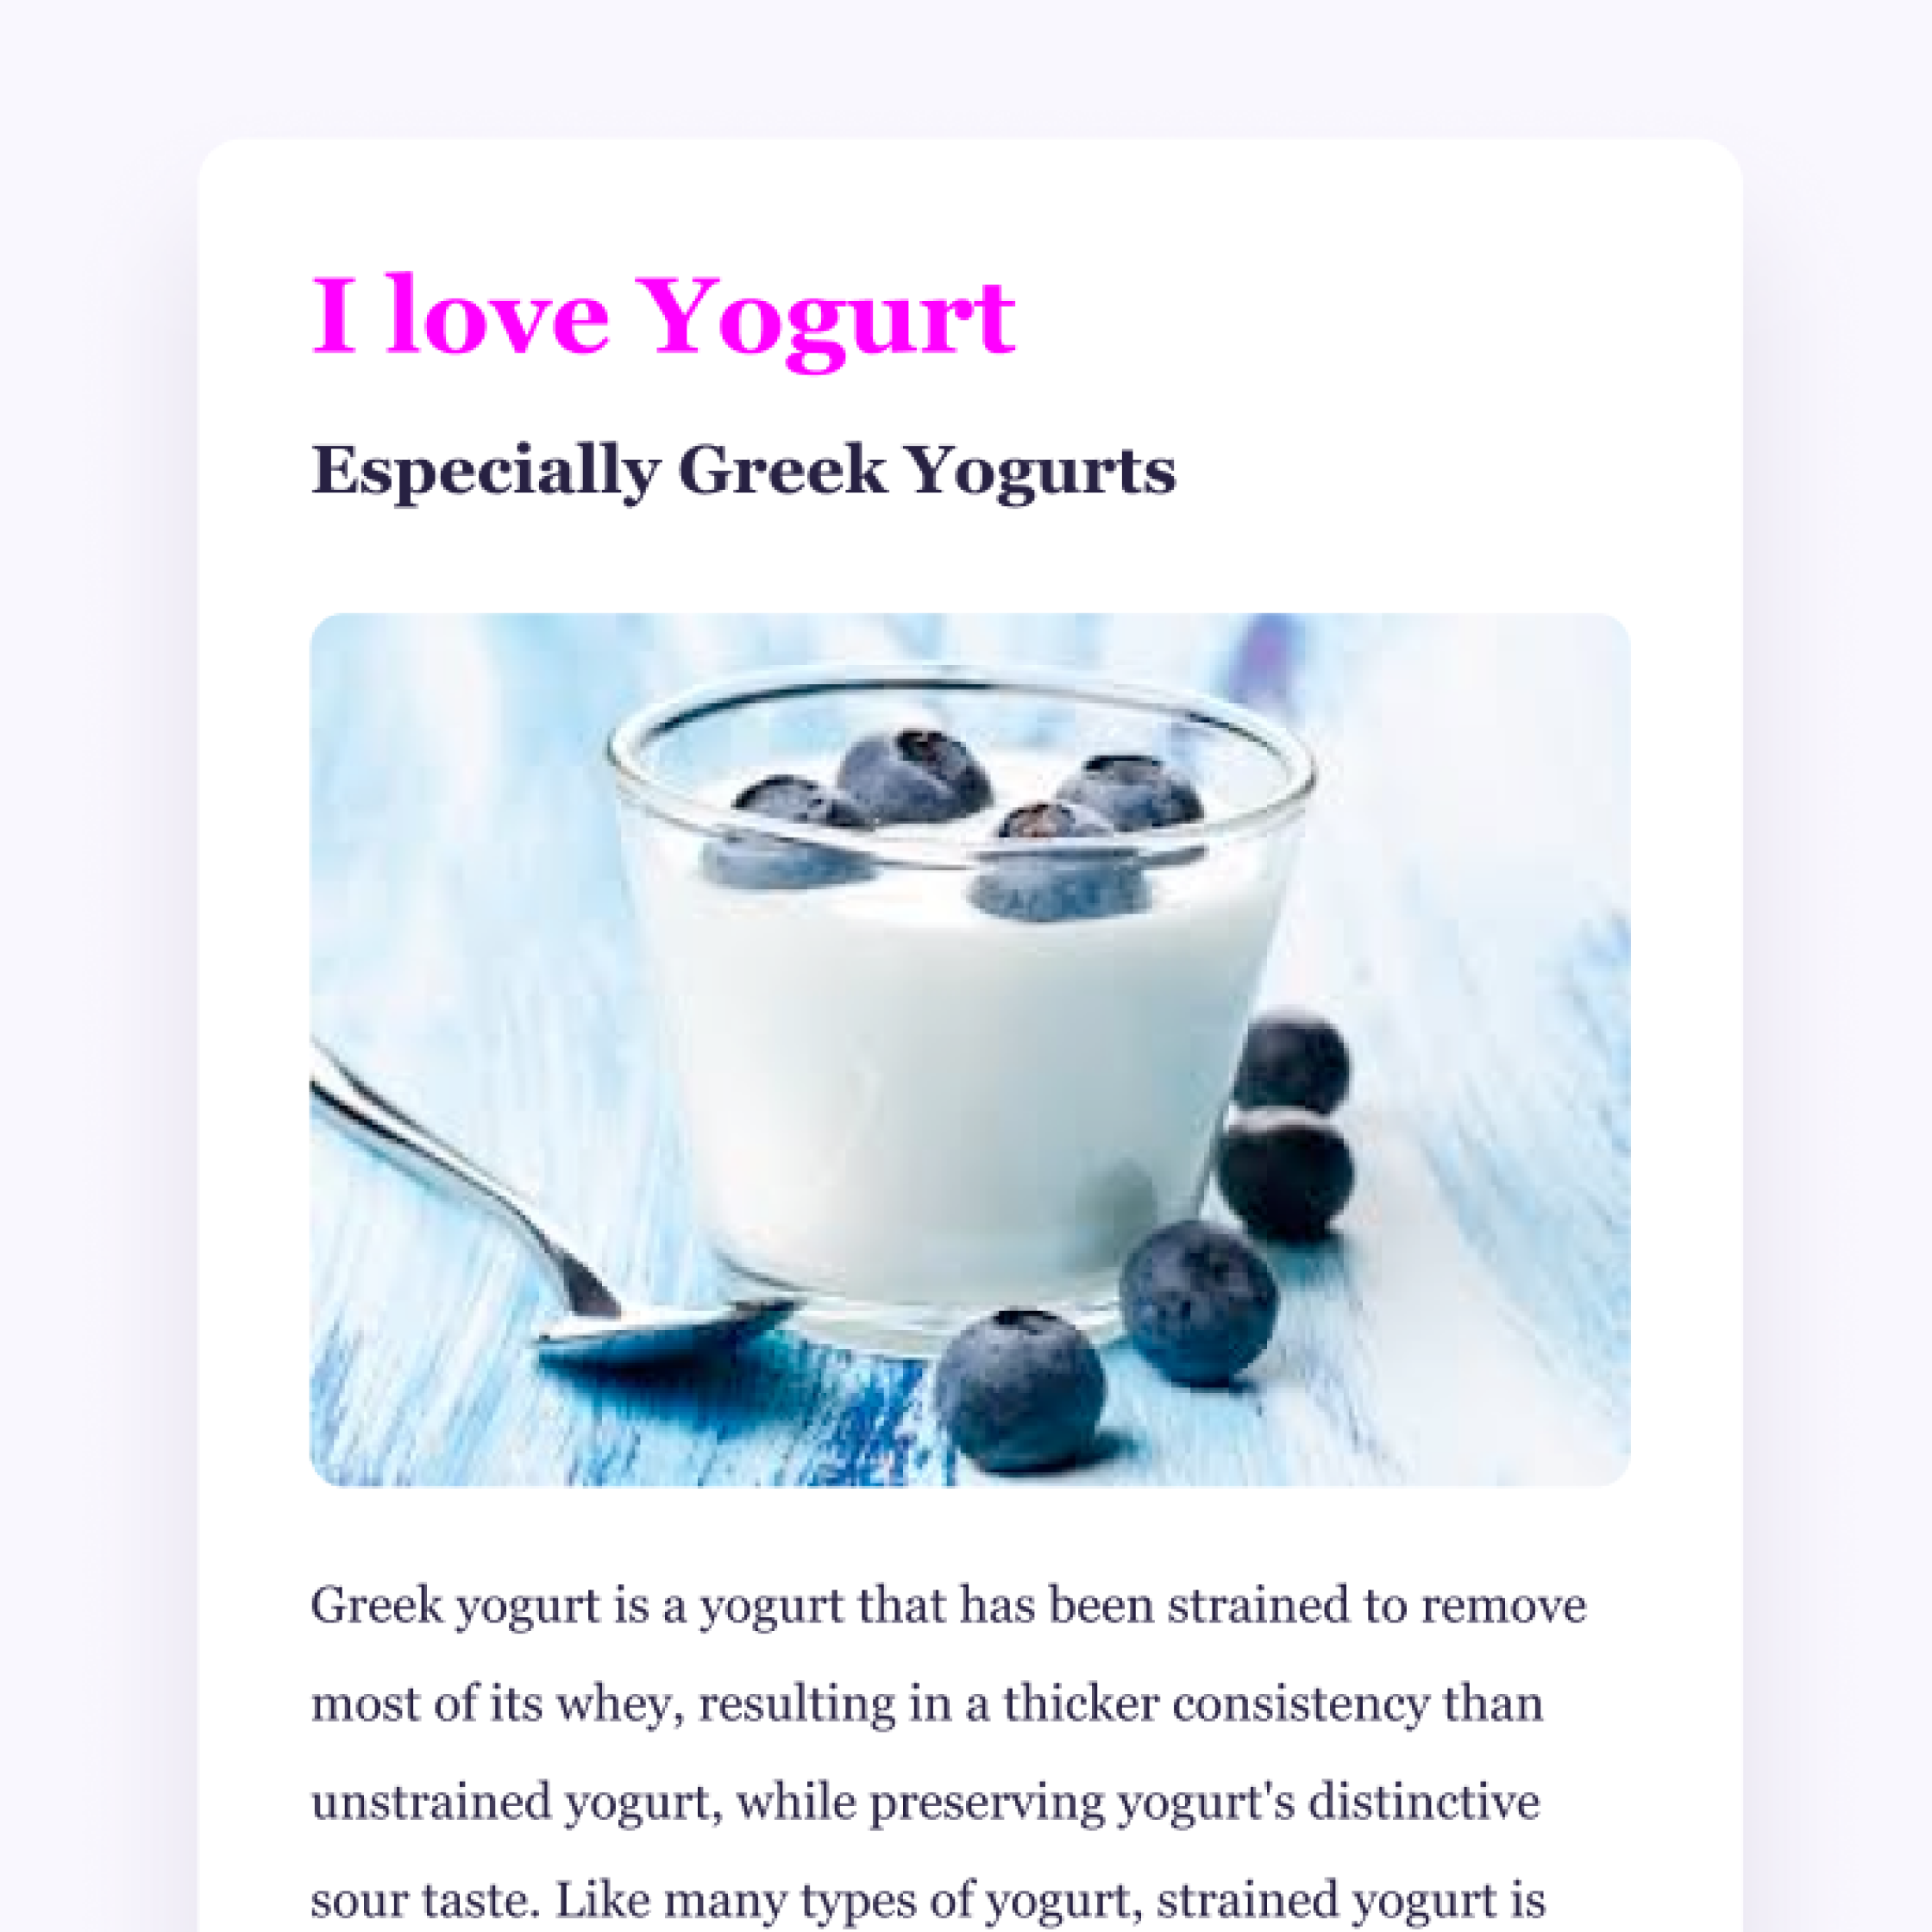 Yogurt Image and app summary